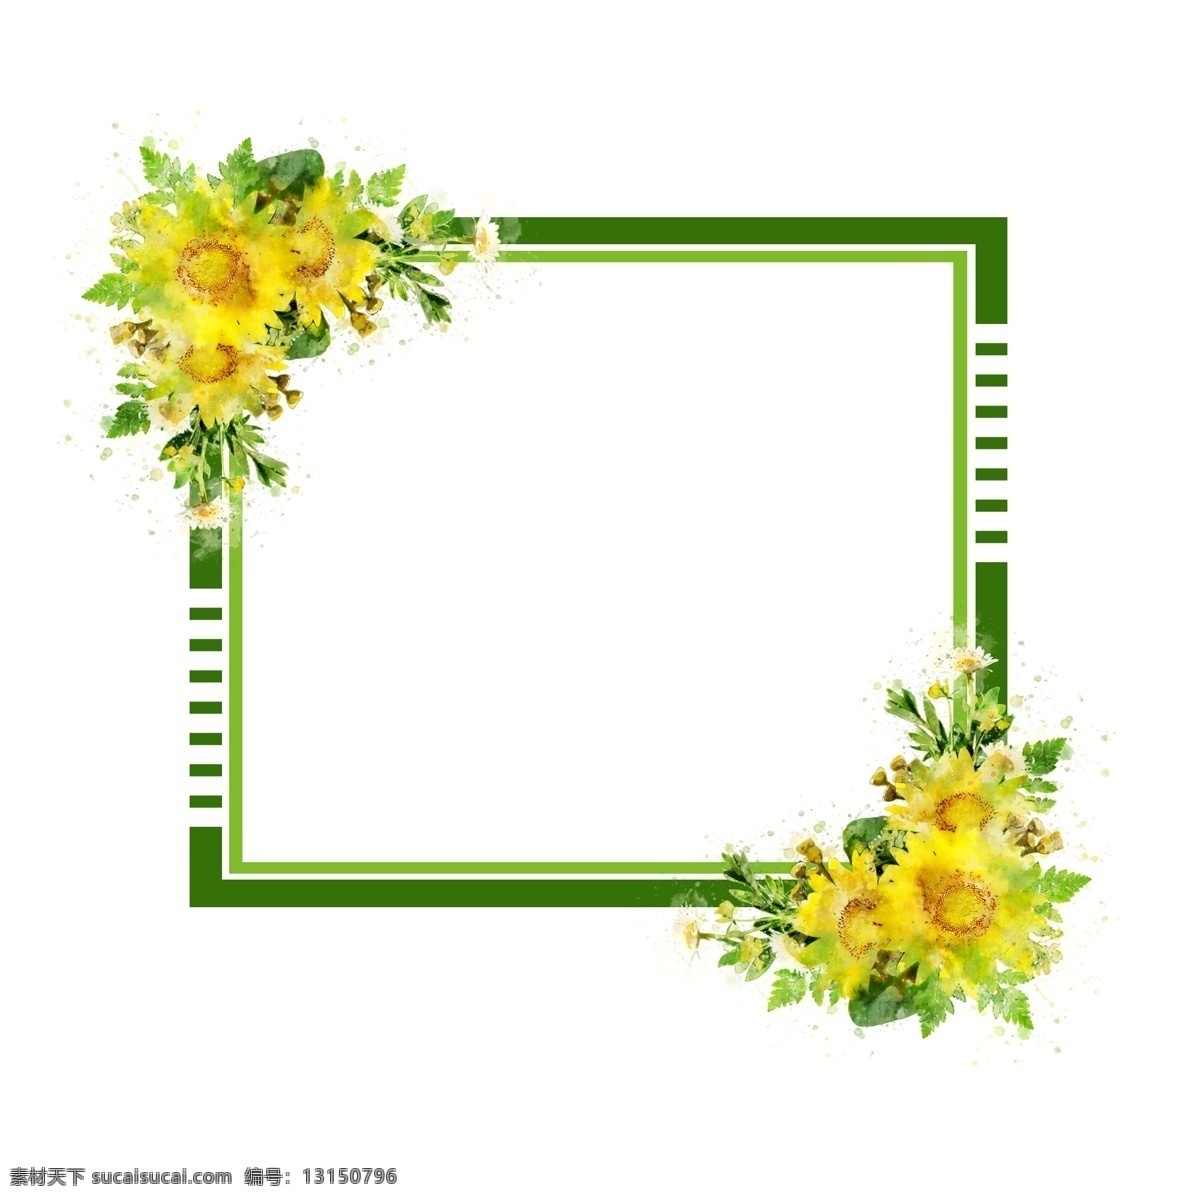 手绘 鲜花 向日葵 方形 水彩 边框 元素 绿色 原创 植物边框 手绘边框 方形边框